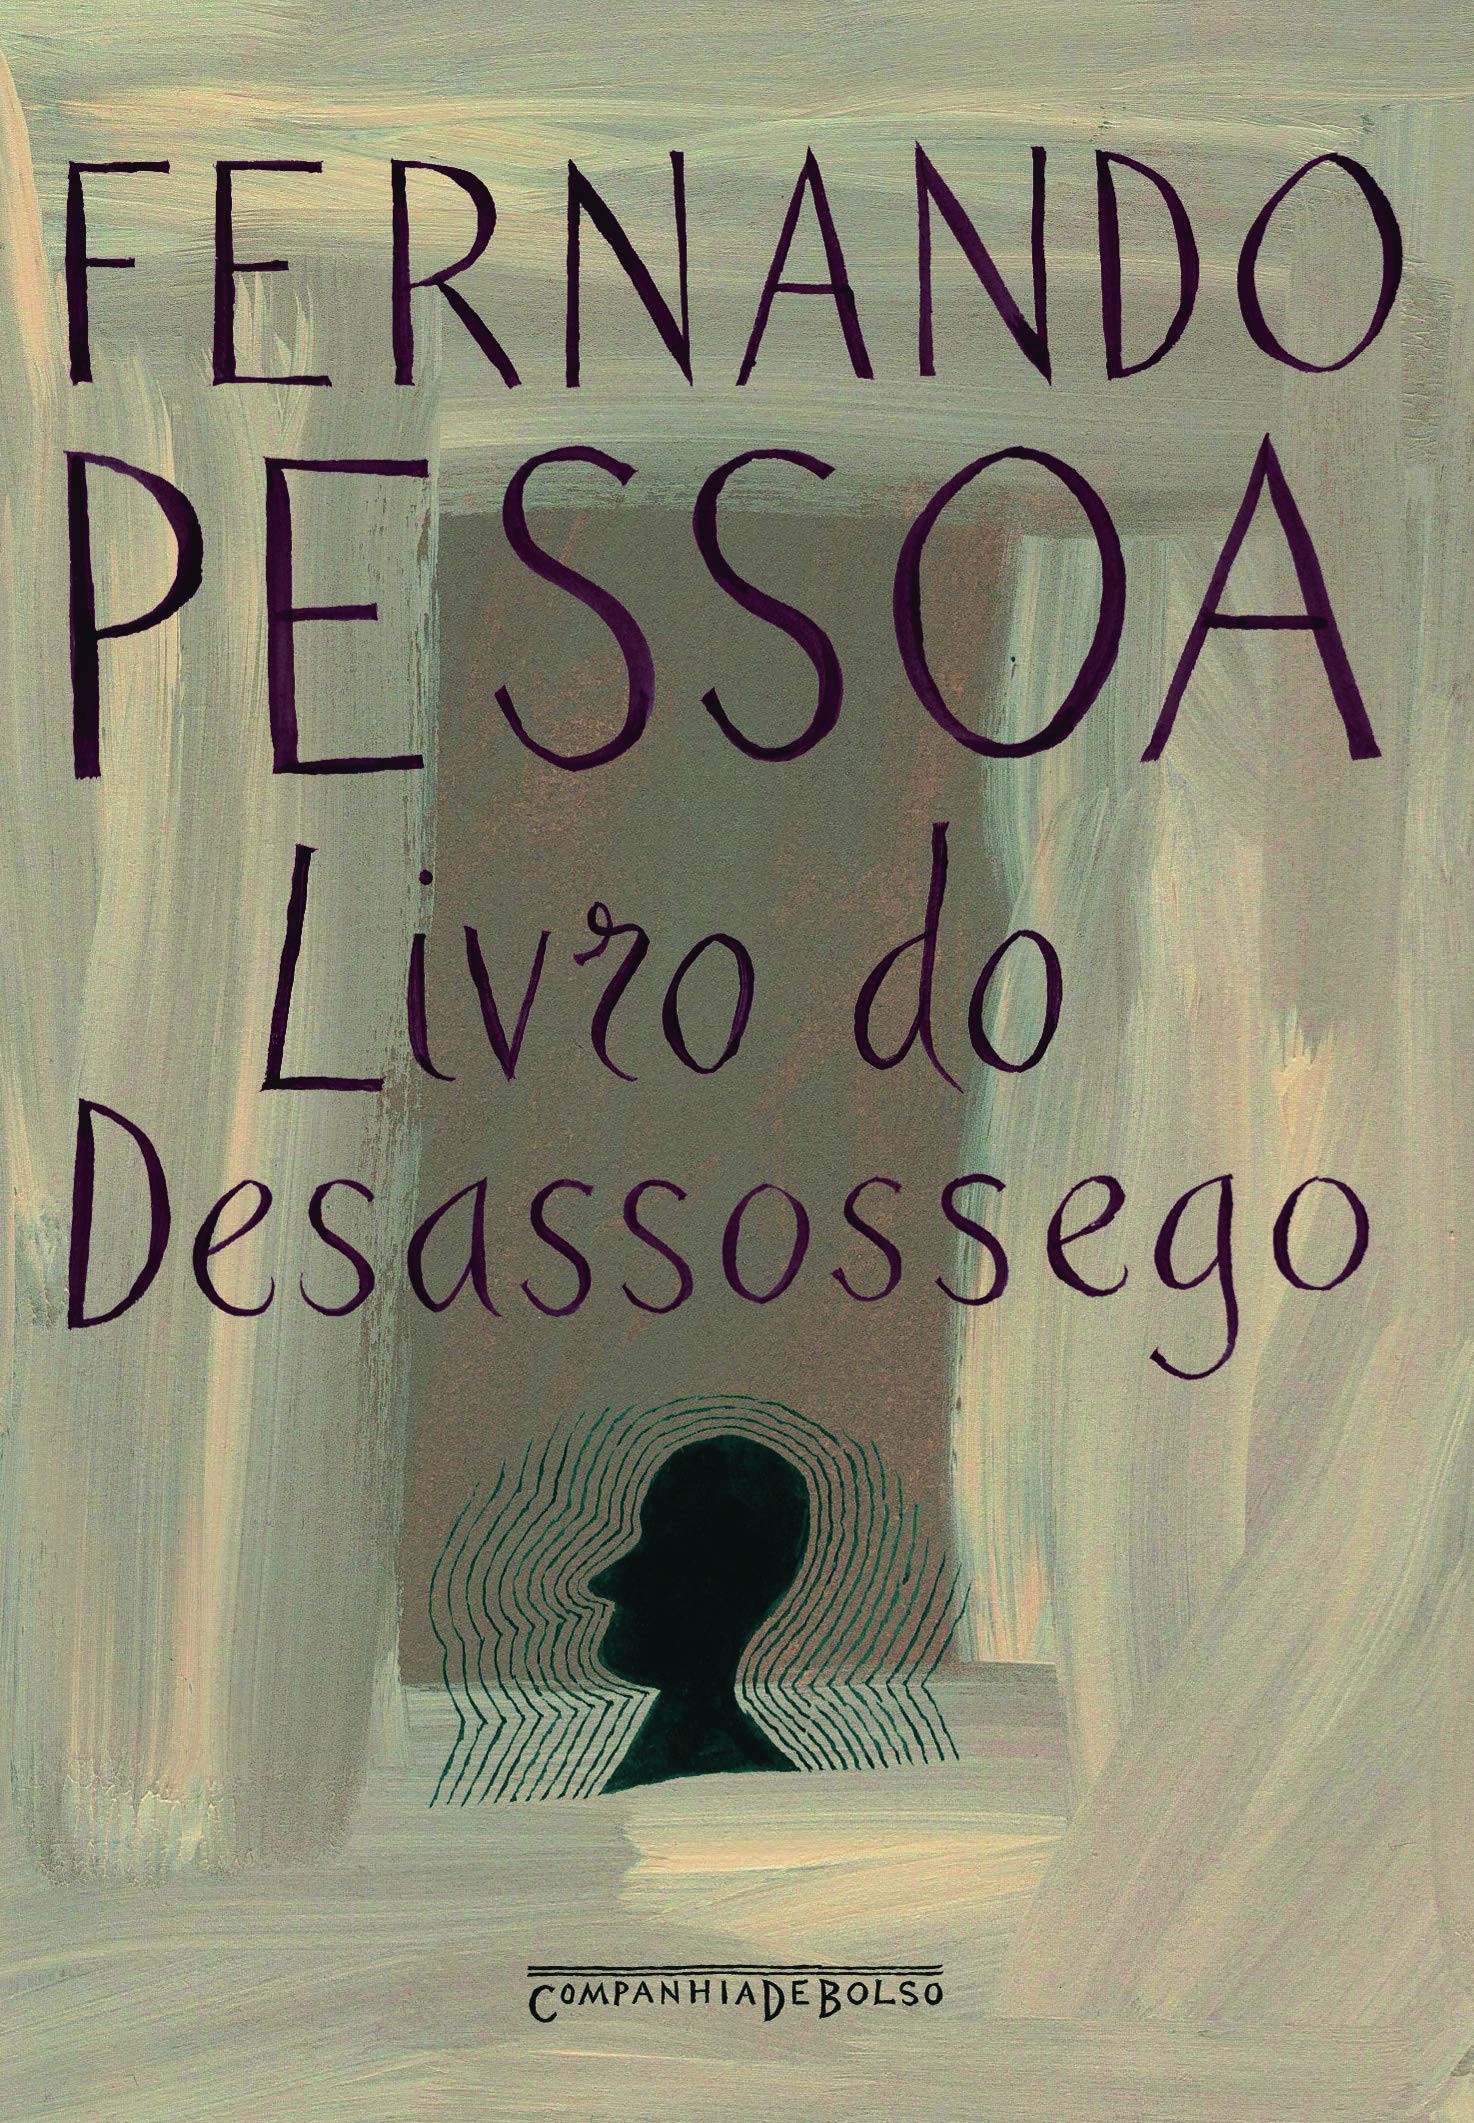 Livro do desassossego, de Fernando Pessoa (Foto: Divulgação)